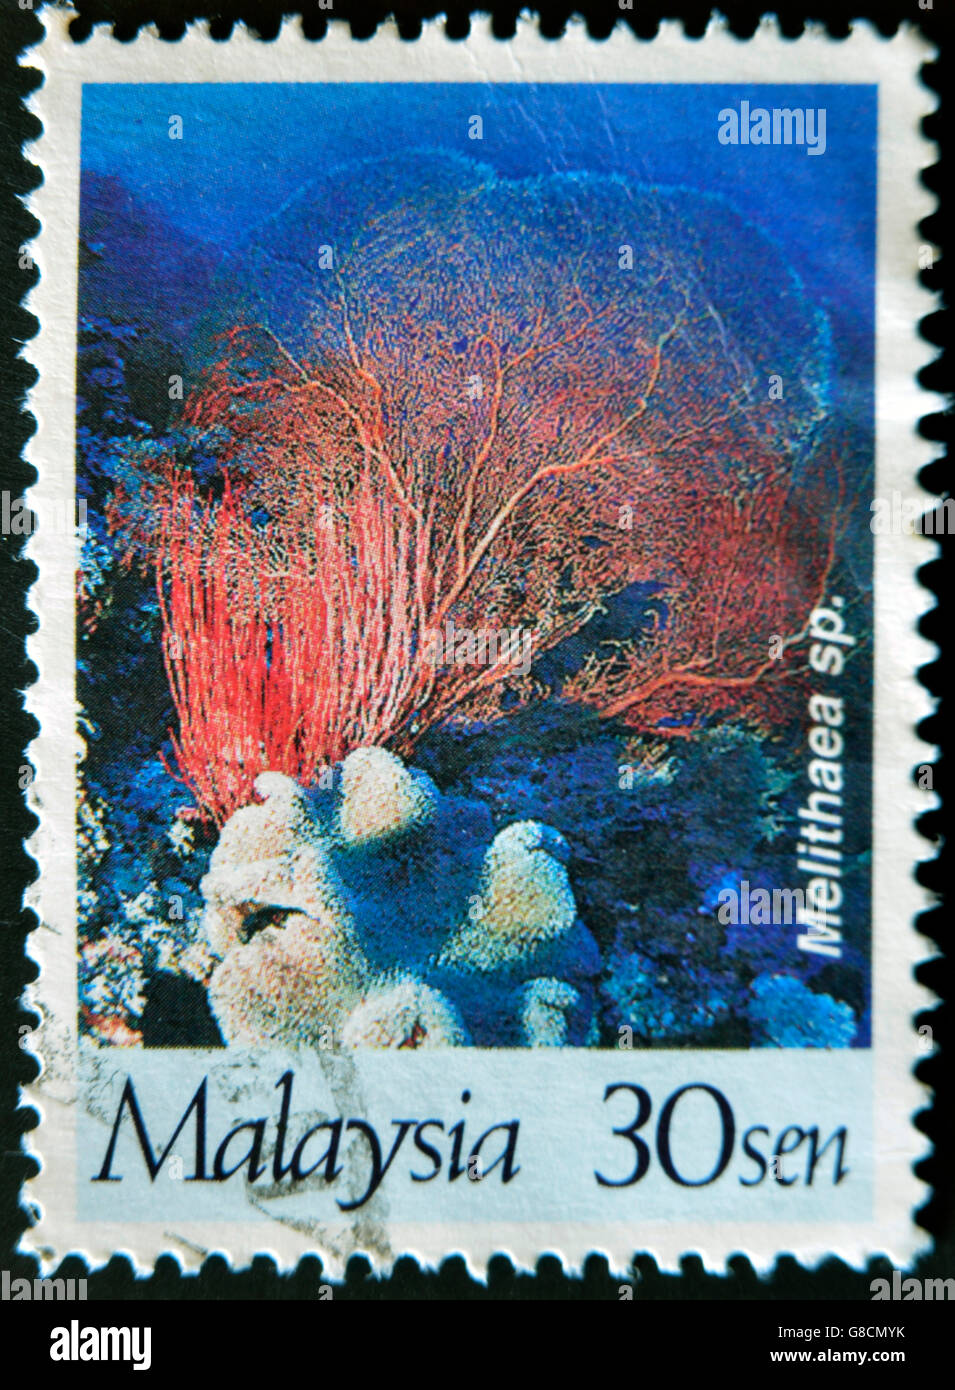 MALAYSIA - CIRCA 1997: A stamp printed in Malaysia shows Melithaea sp., circa 1997 Stock Photo